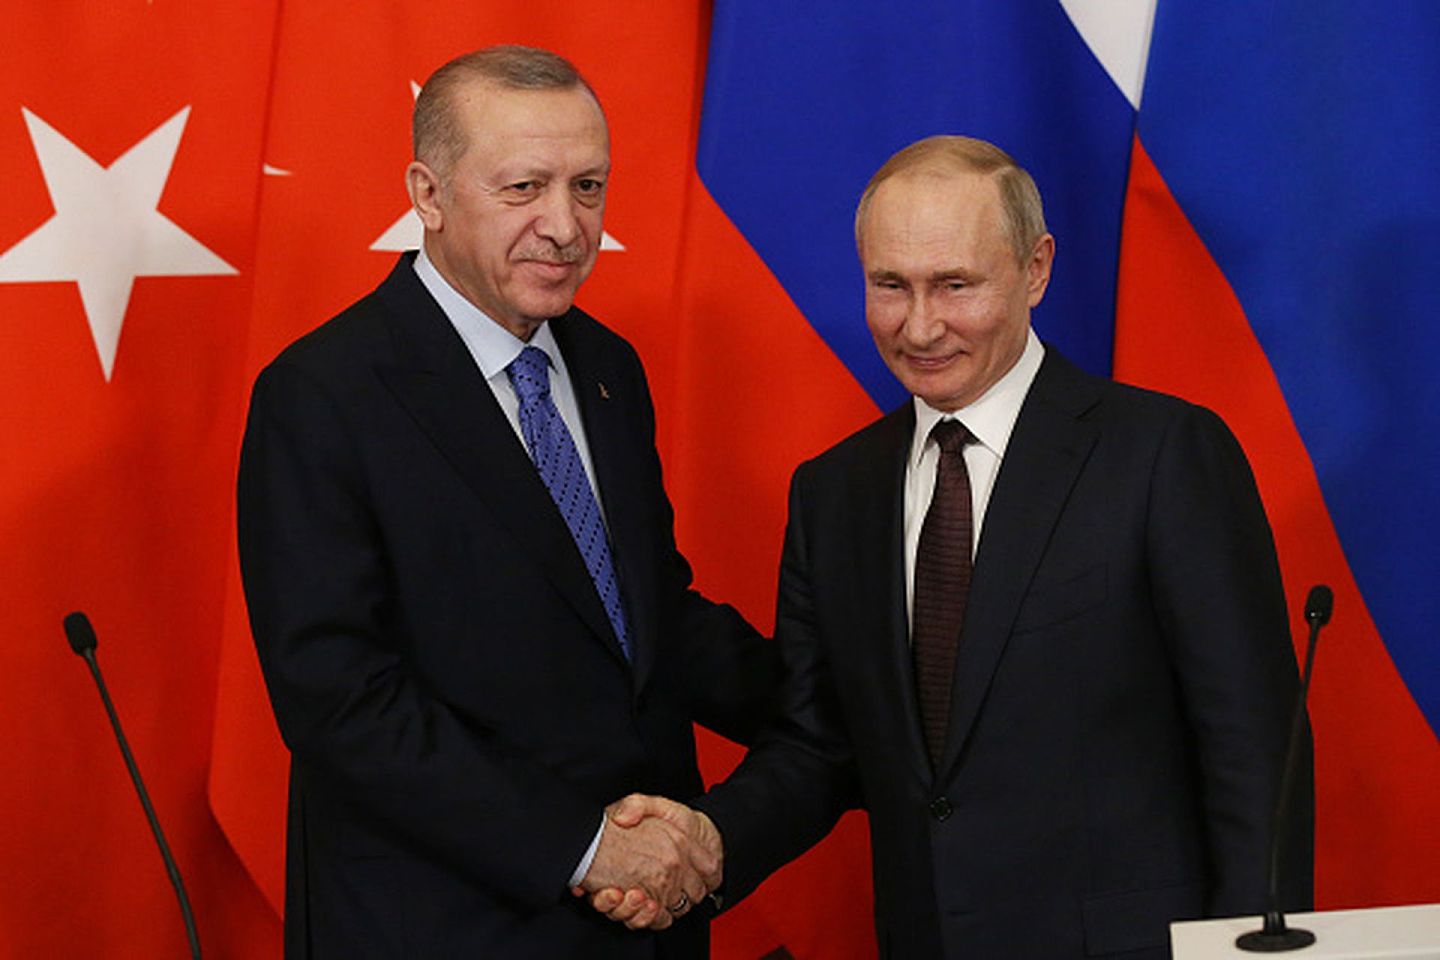 尽管俄土两国在地缘利益上存在诸多矛盾，但双方似乎总能通过精巧的牌底交易避免正面冲突，并进行卓有成效的战略合作。图为2020年3月5日，俄罗斯总统普京在莫斯科接见到访的土耳其总统埃尔多安。（Getty）